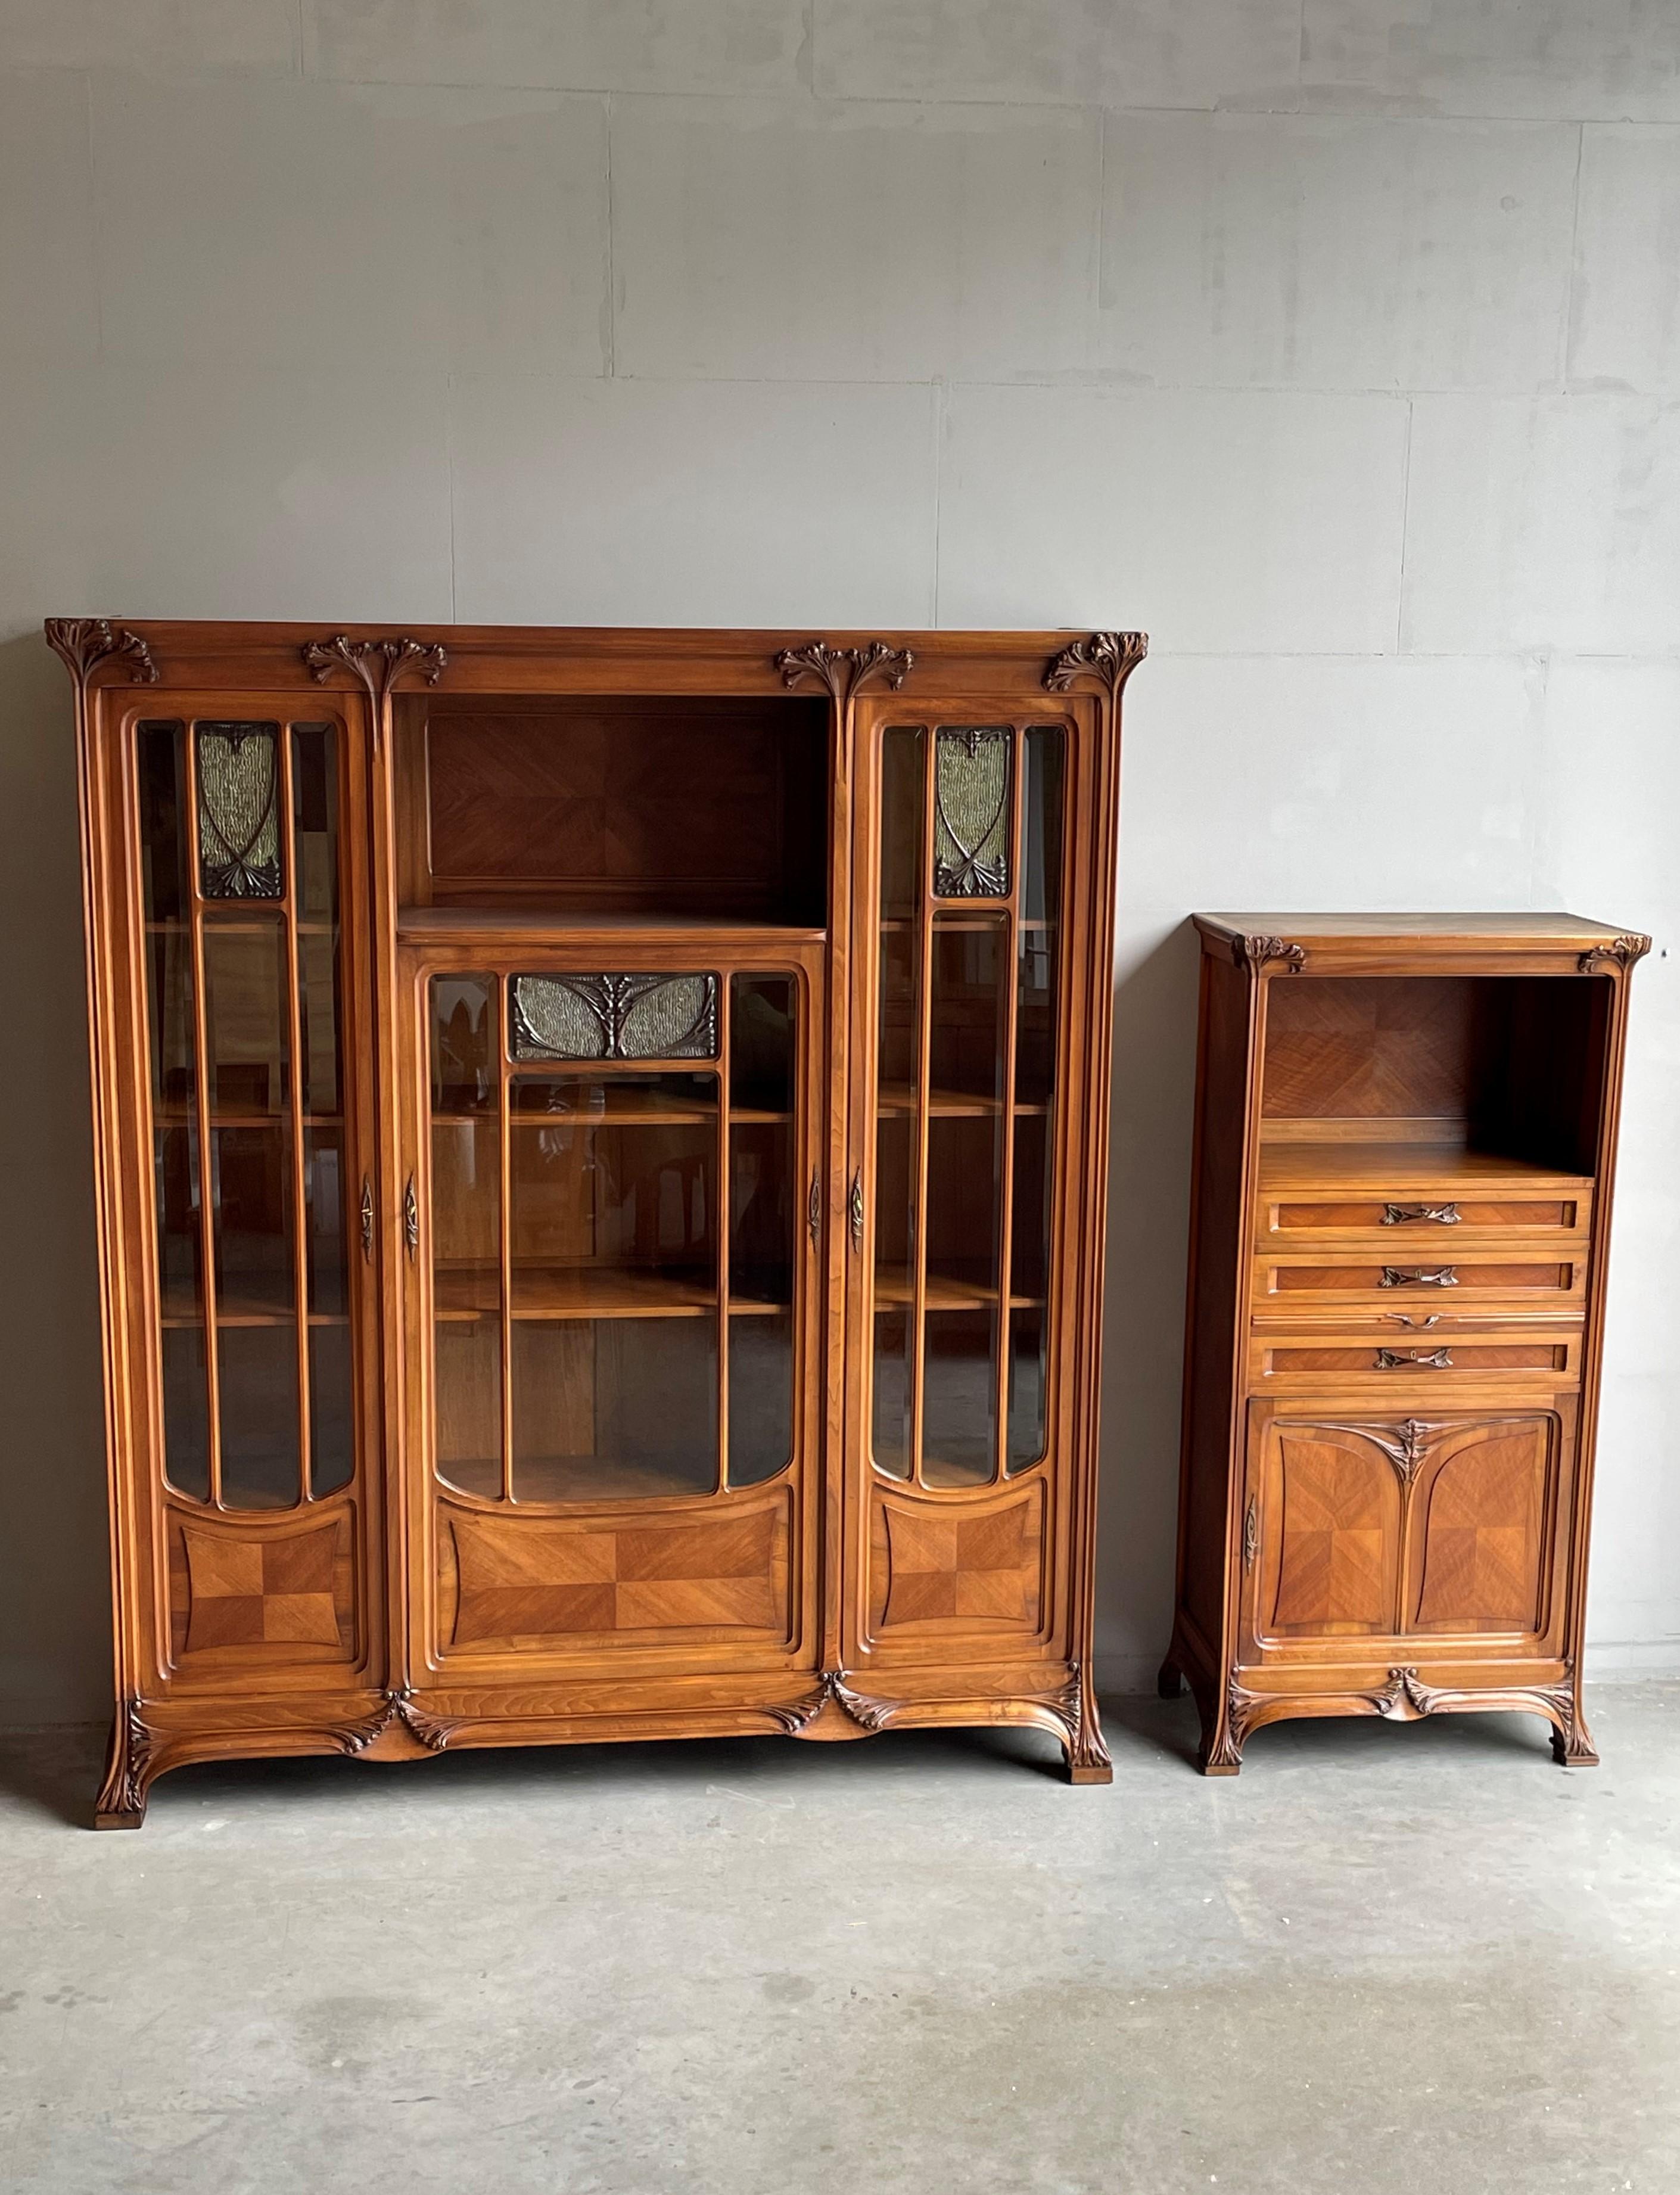 20th Century Important Louis Majorelle Art Nouveau Filing Cabinet, Bookcase, Desk and Chair For Sale